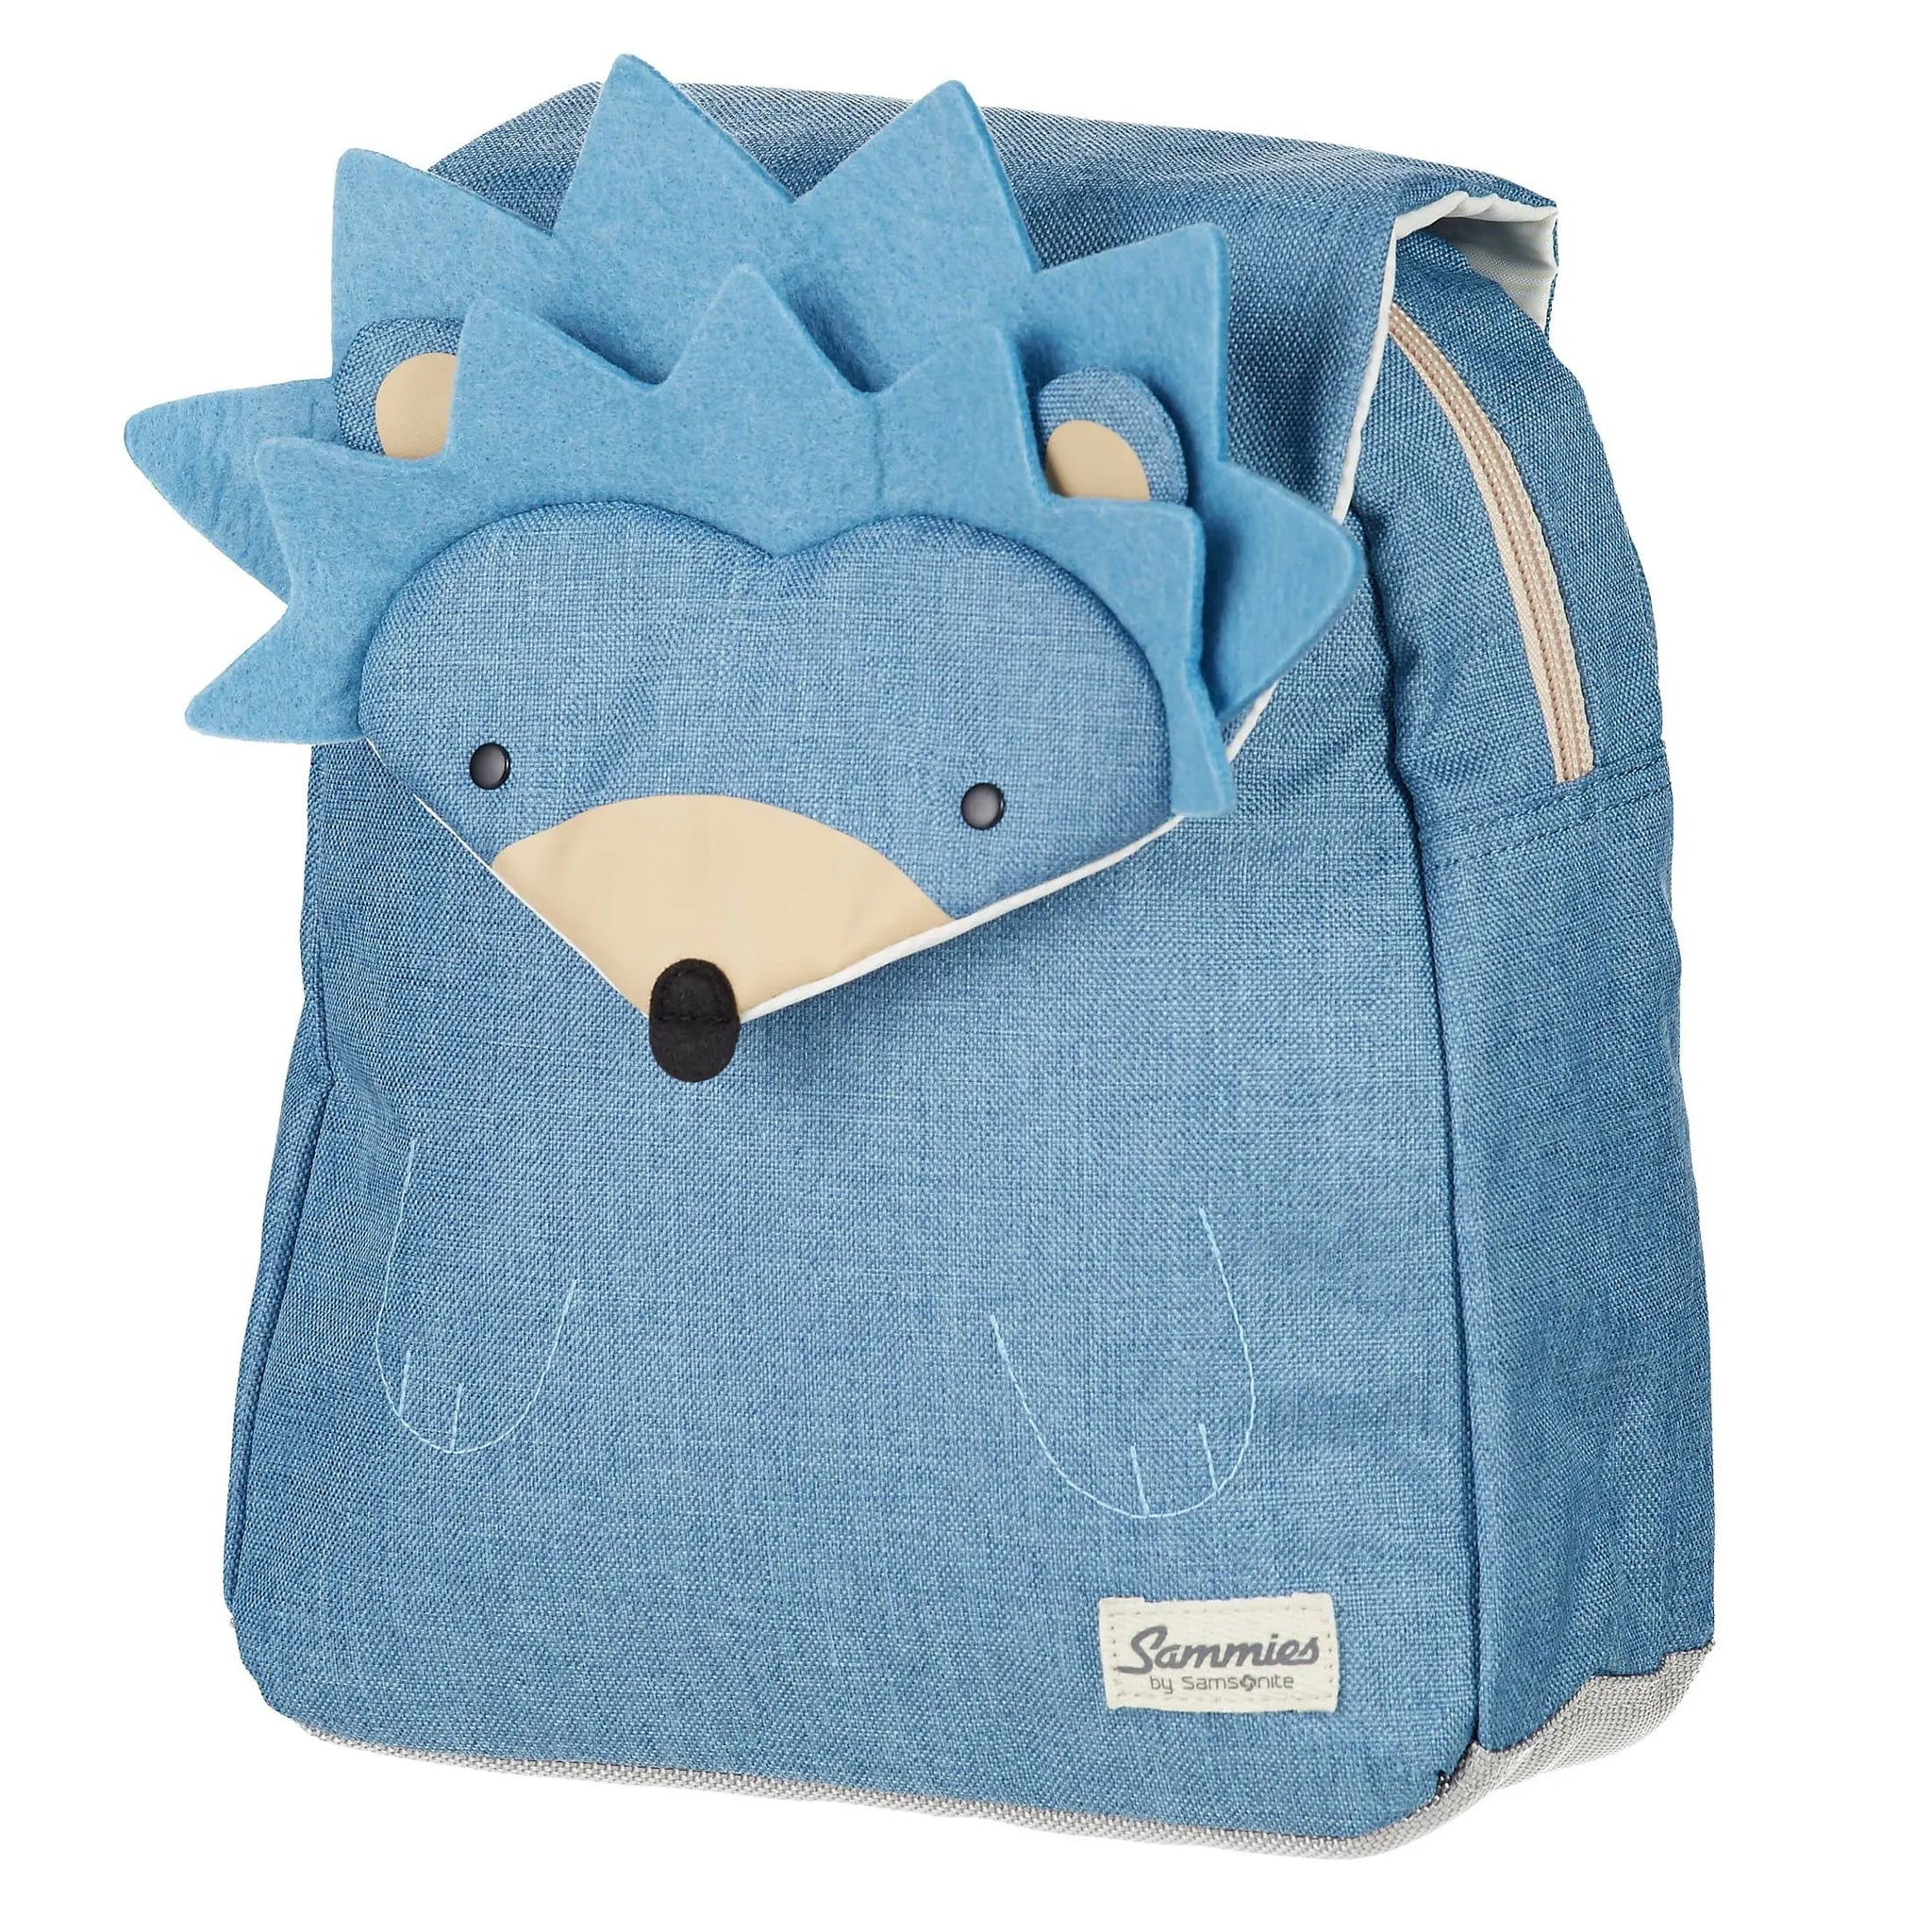 Hedgehog Samsonite backpack Sammies hedgehog - harr cm Happy 34 Harris